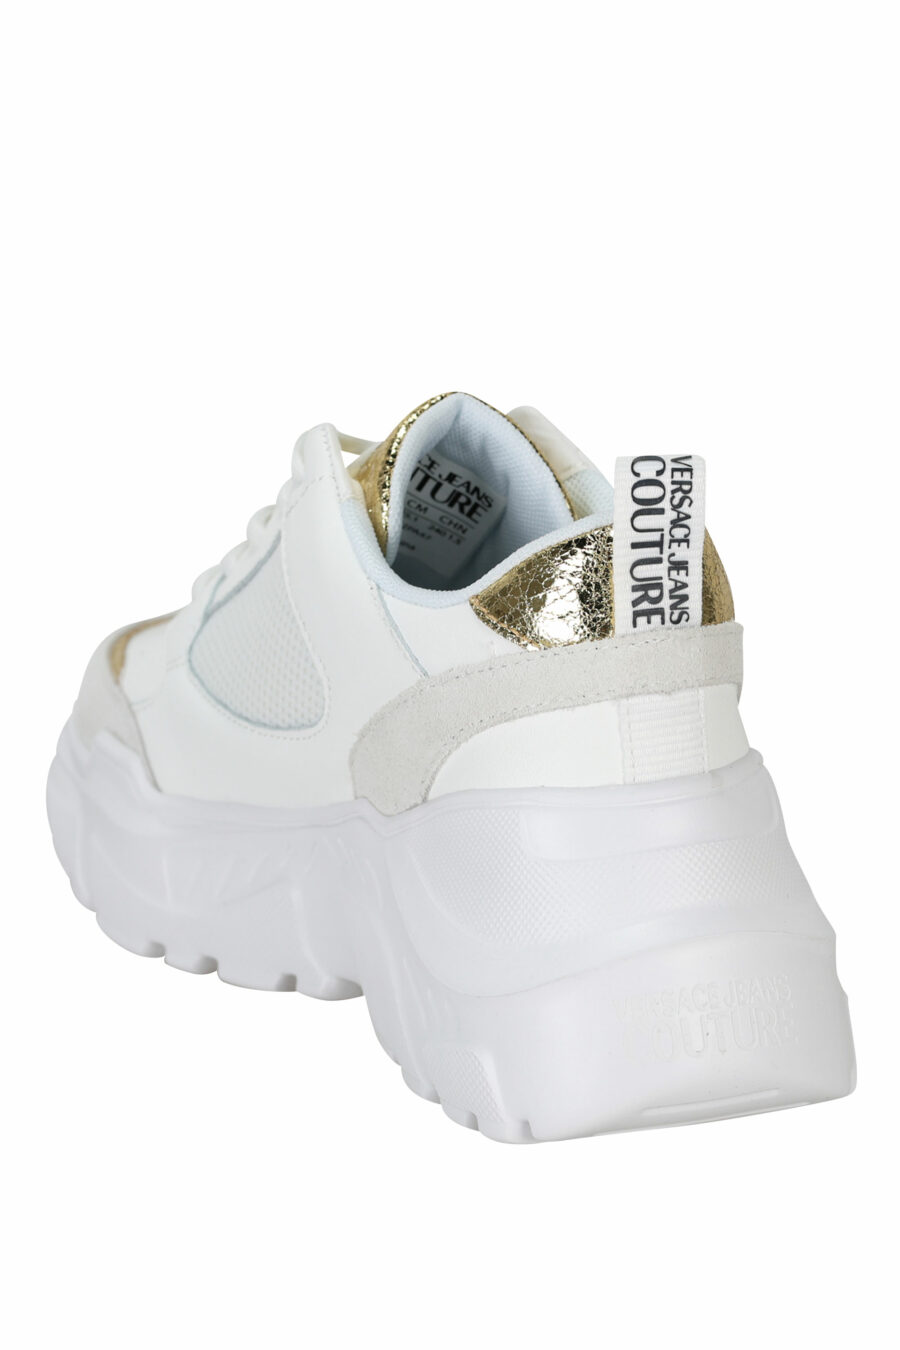 Zapatillas blancas mix con detalles dorados y plataforma - 8052019604764 3